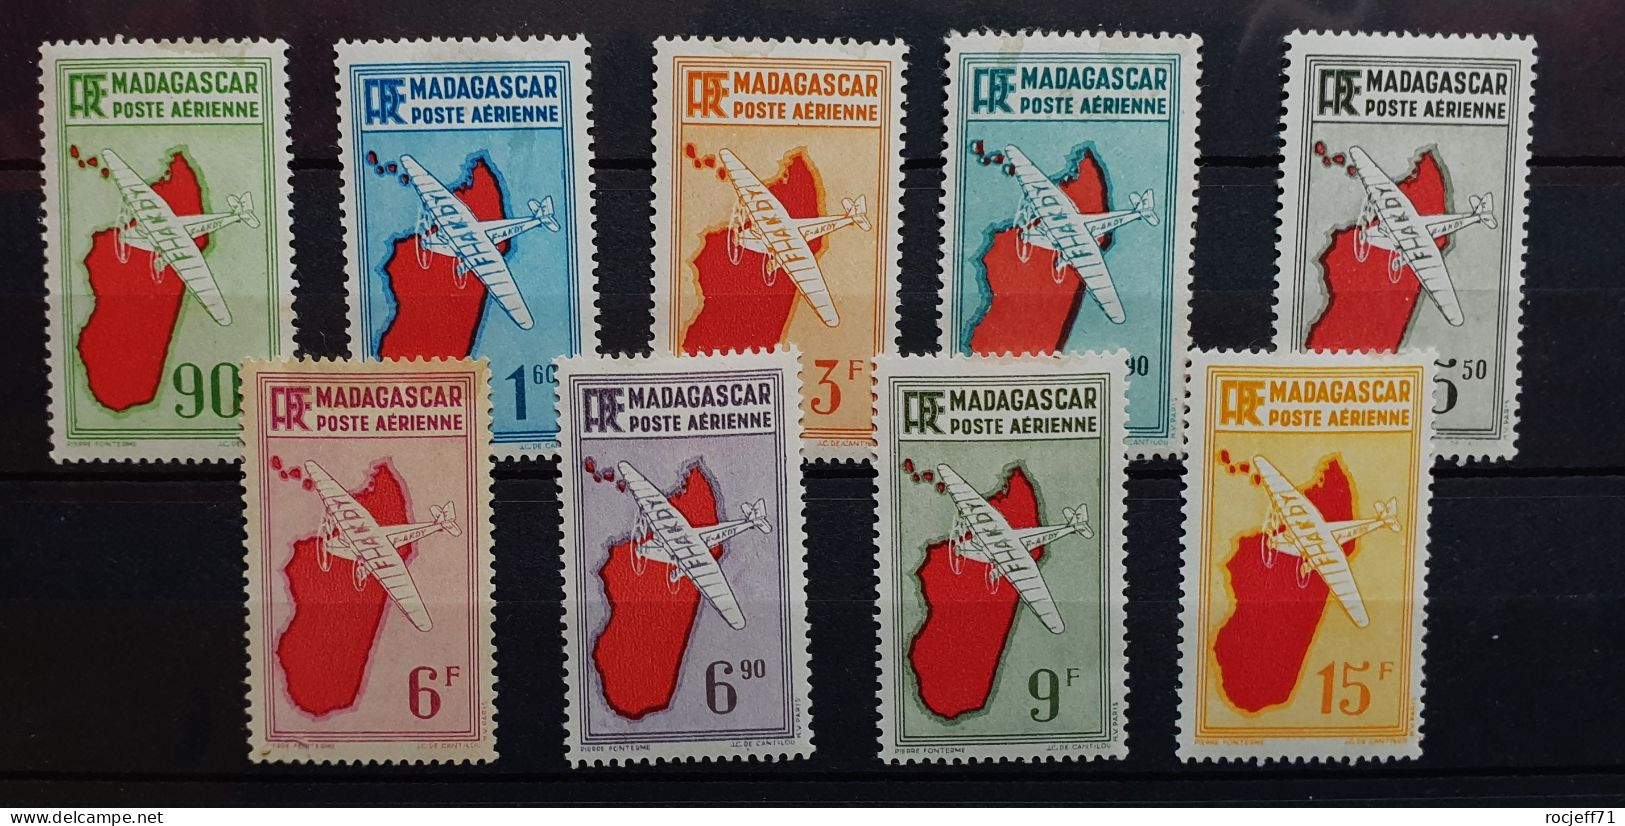 04 - 24 - Madagascar - Poste Aérienne N°16 à 24 * - MH - Série Complète - Luchtpost